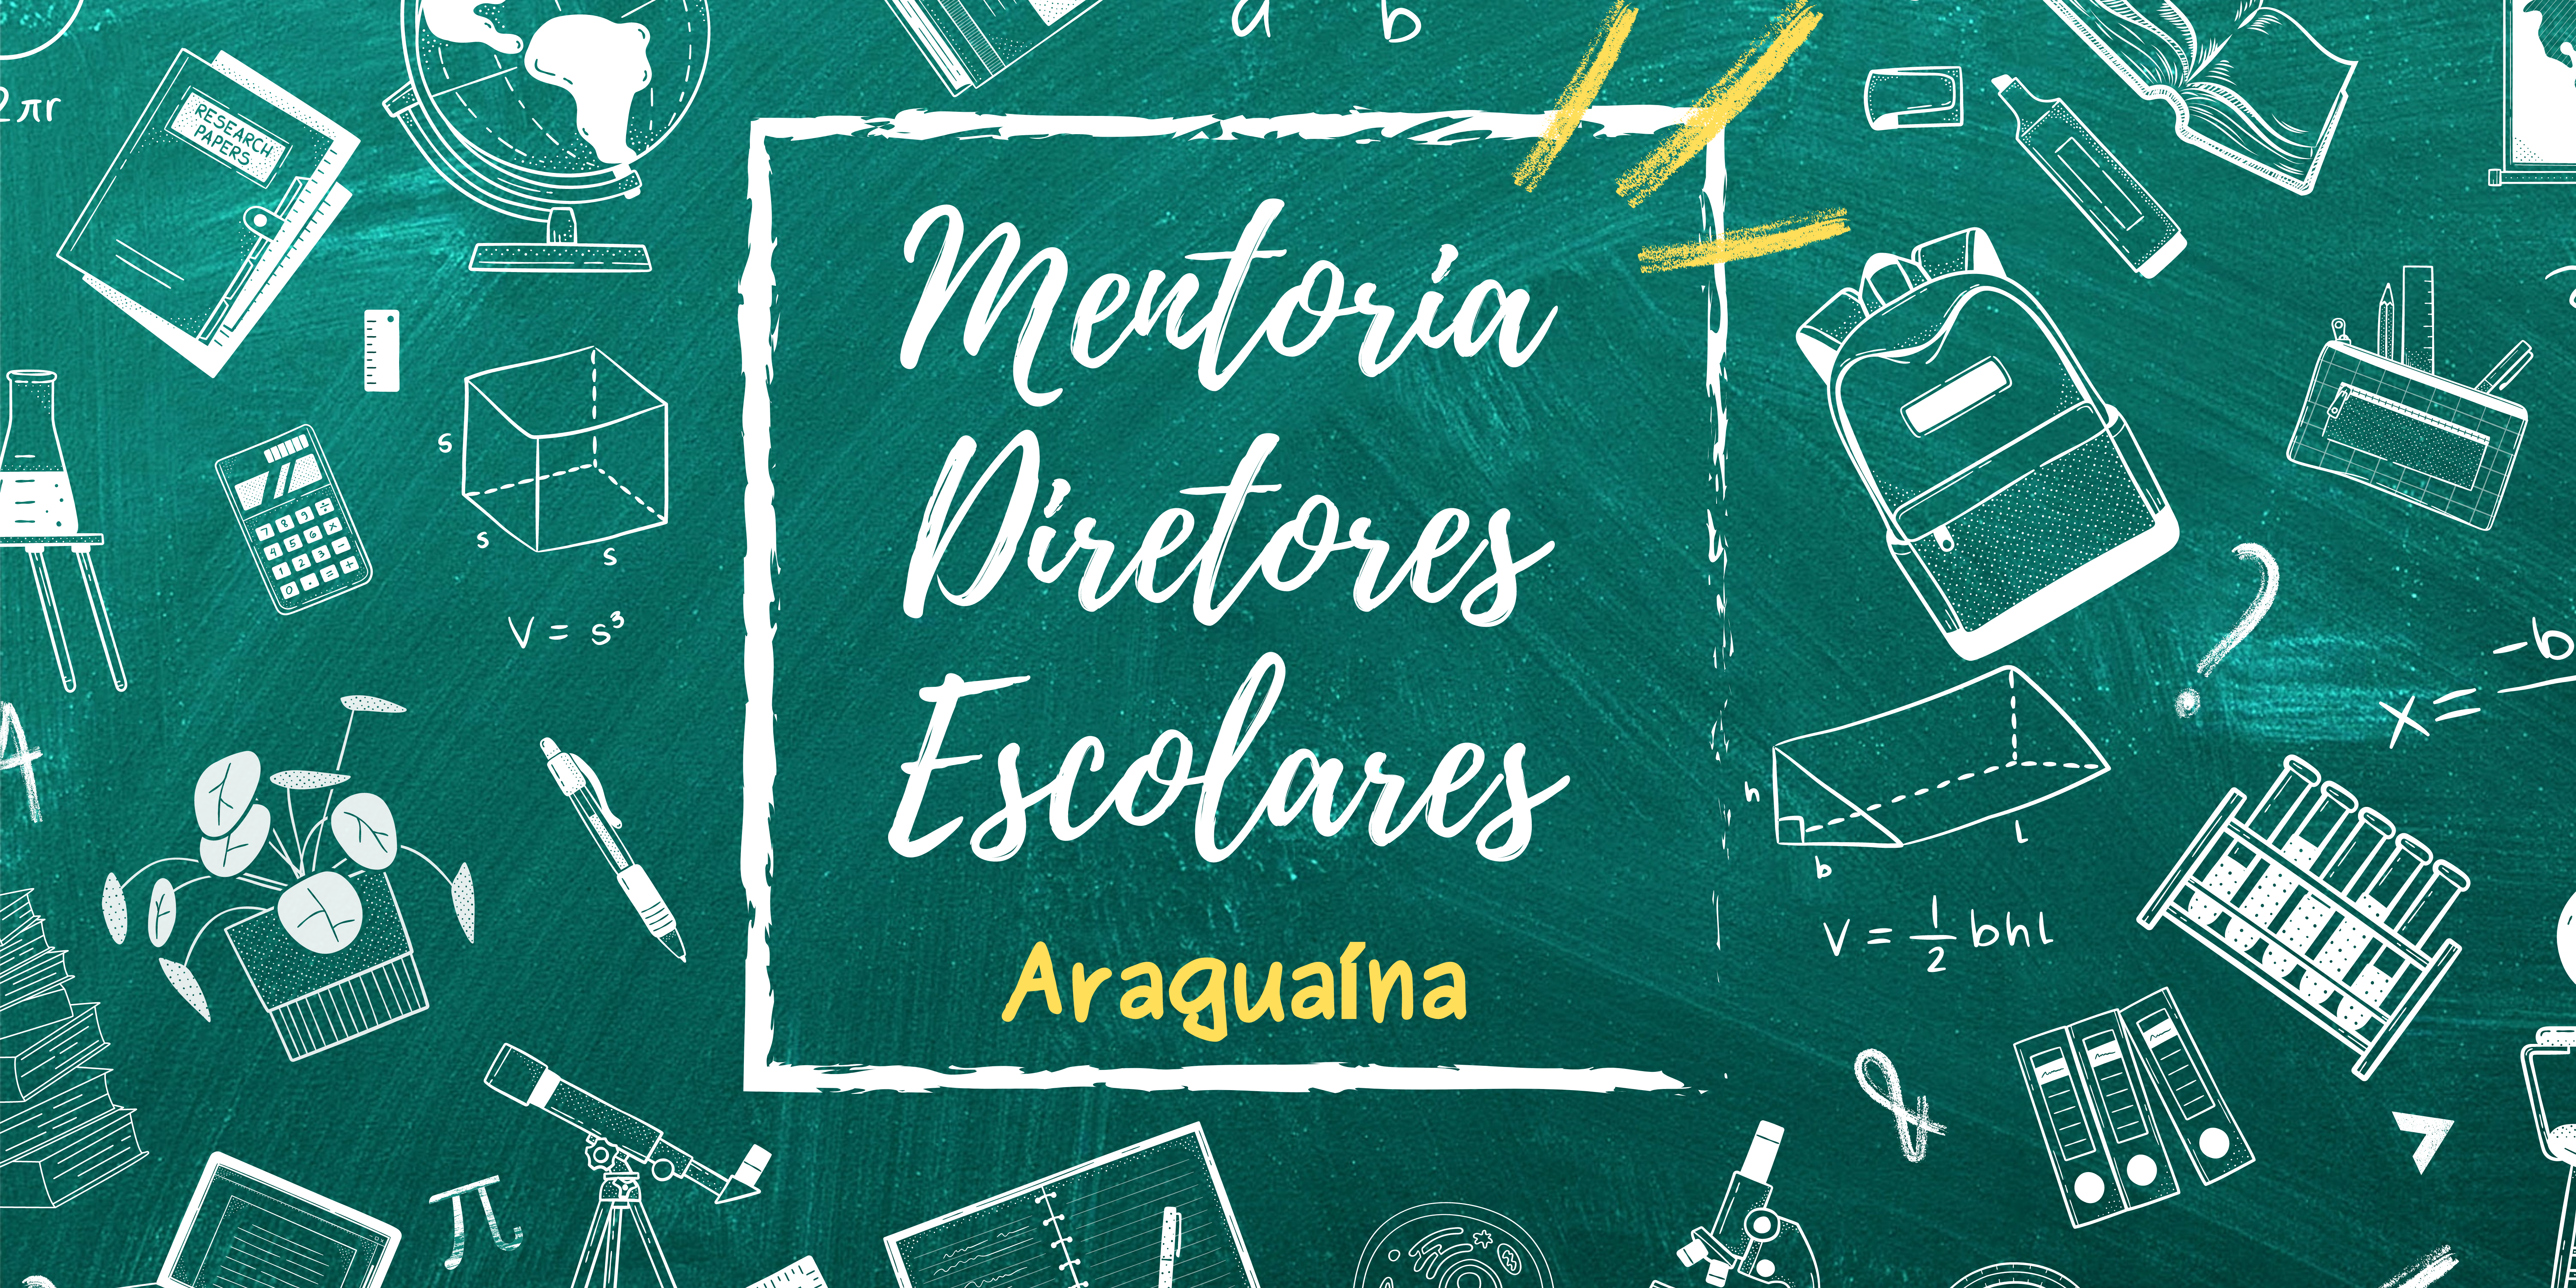 Curso de Aperfeiçoamento em Mentoria de Diretores Escolares - DRE Araguaina